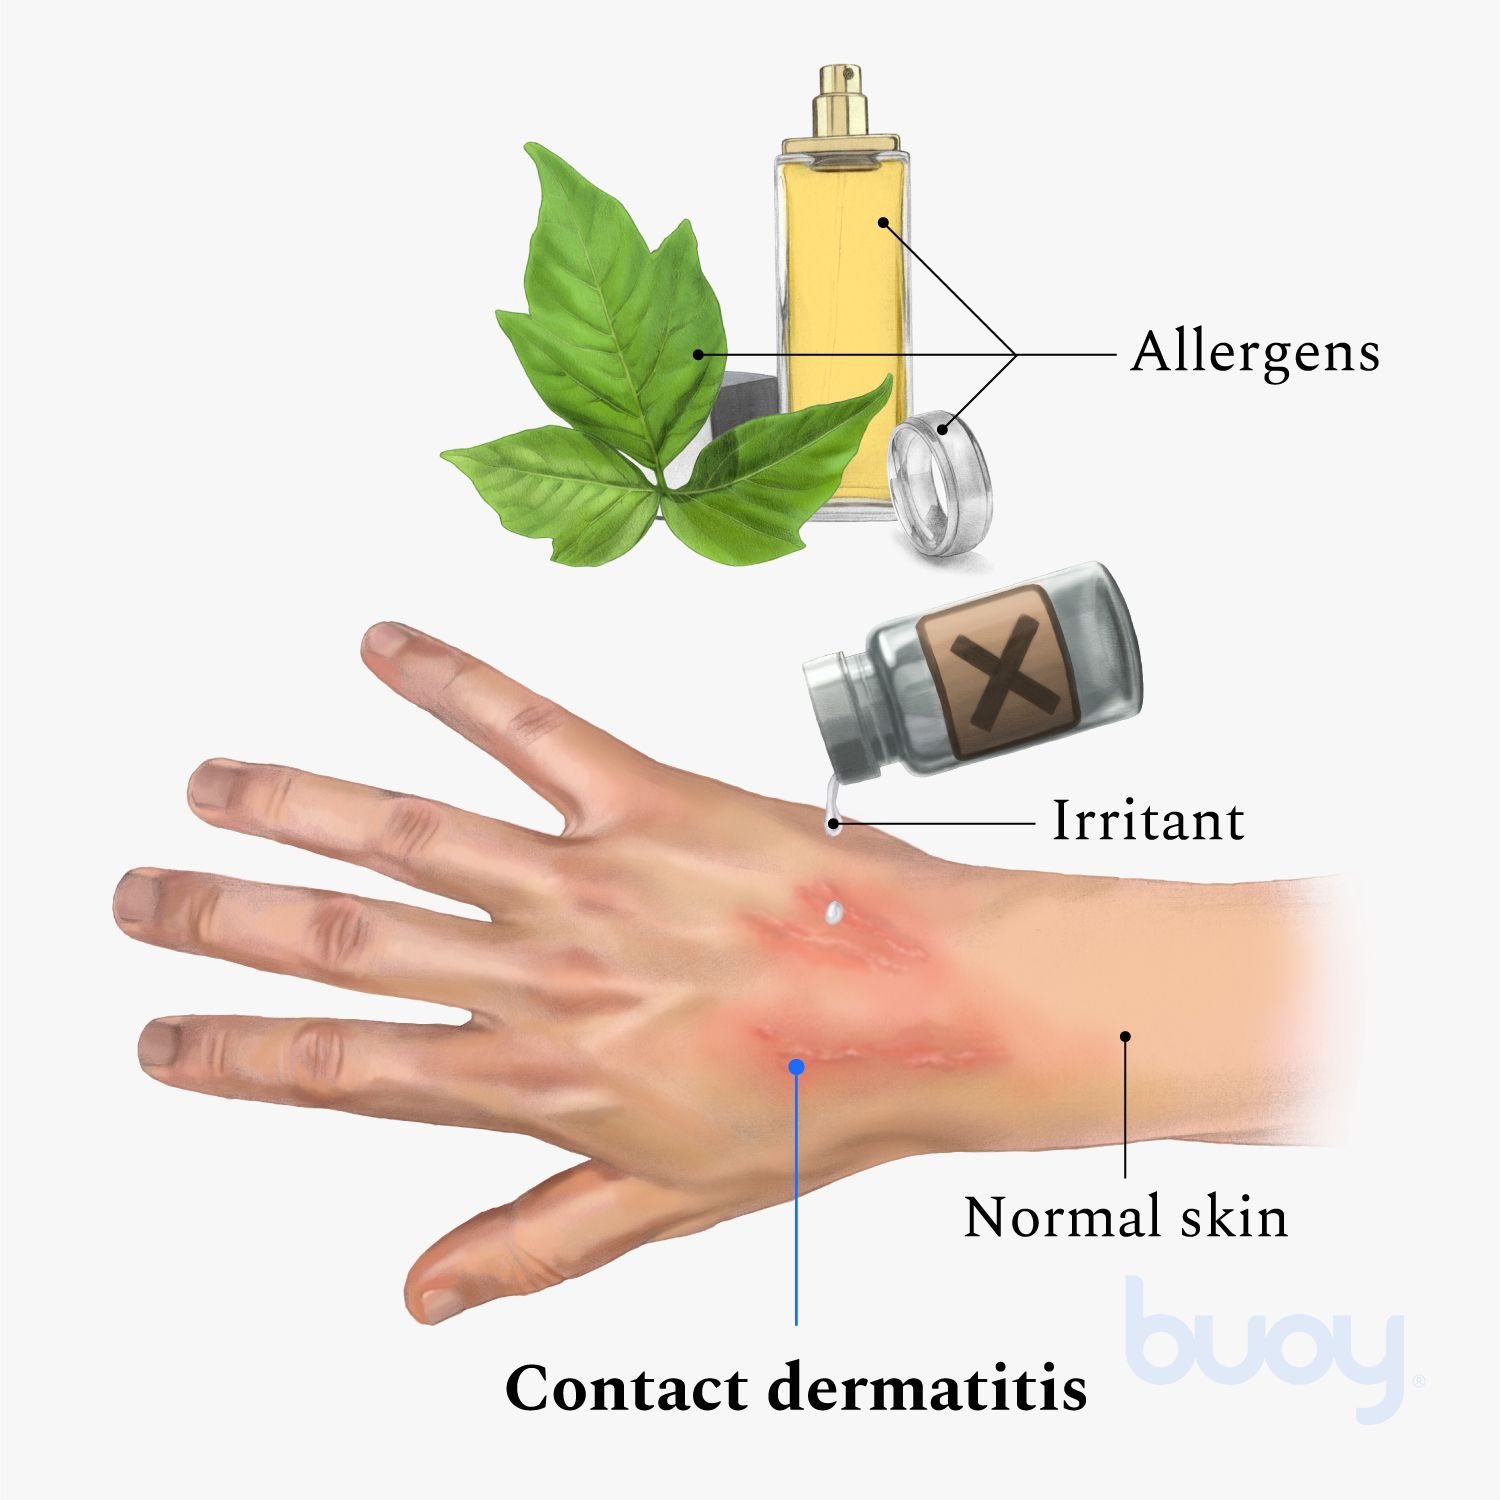 Norit - ¿Sufres alergia, dermatitis, piel seca, eczemas, picores? ¡Este  es tu detergente! Gracias a su fórmula, Norit Sensible es un detergente  neutro 🍃 y sin olor, libre de perfumes, alérgenos y